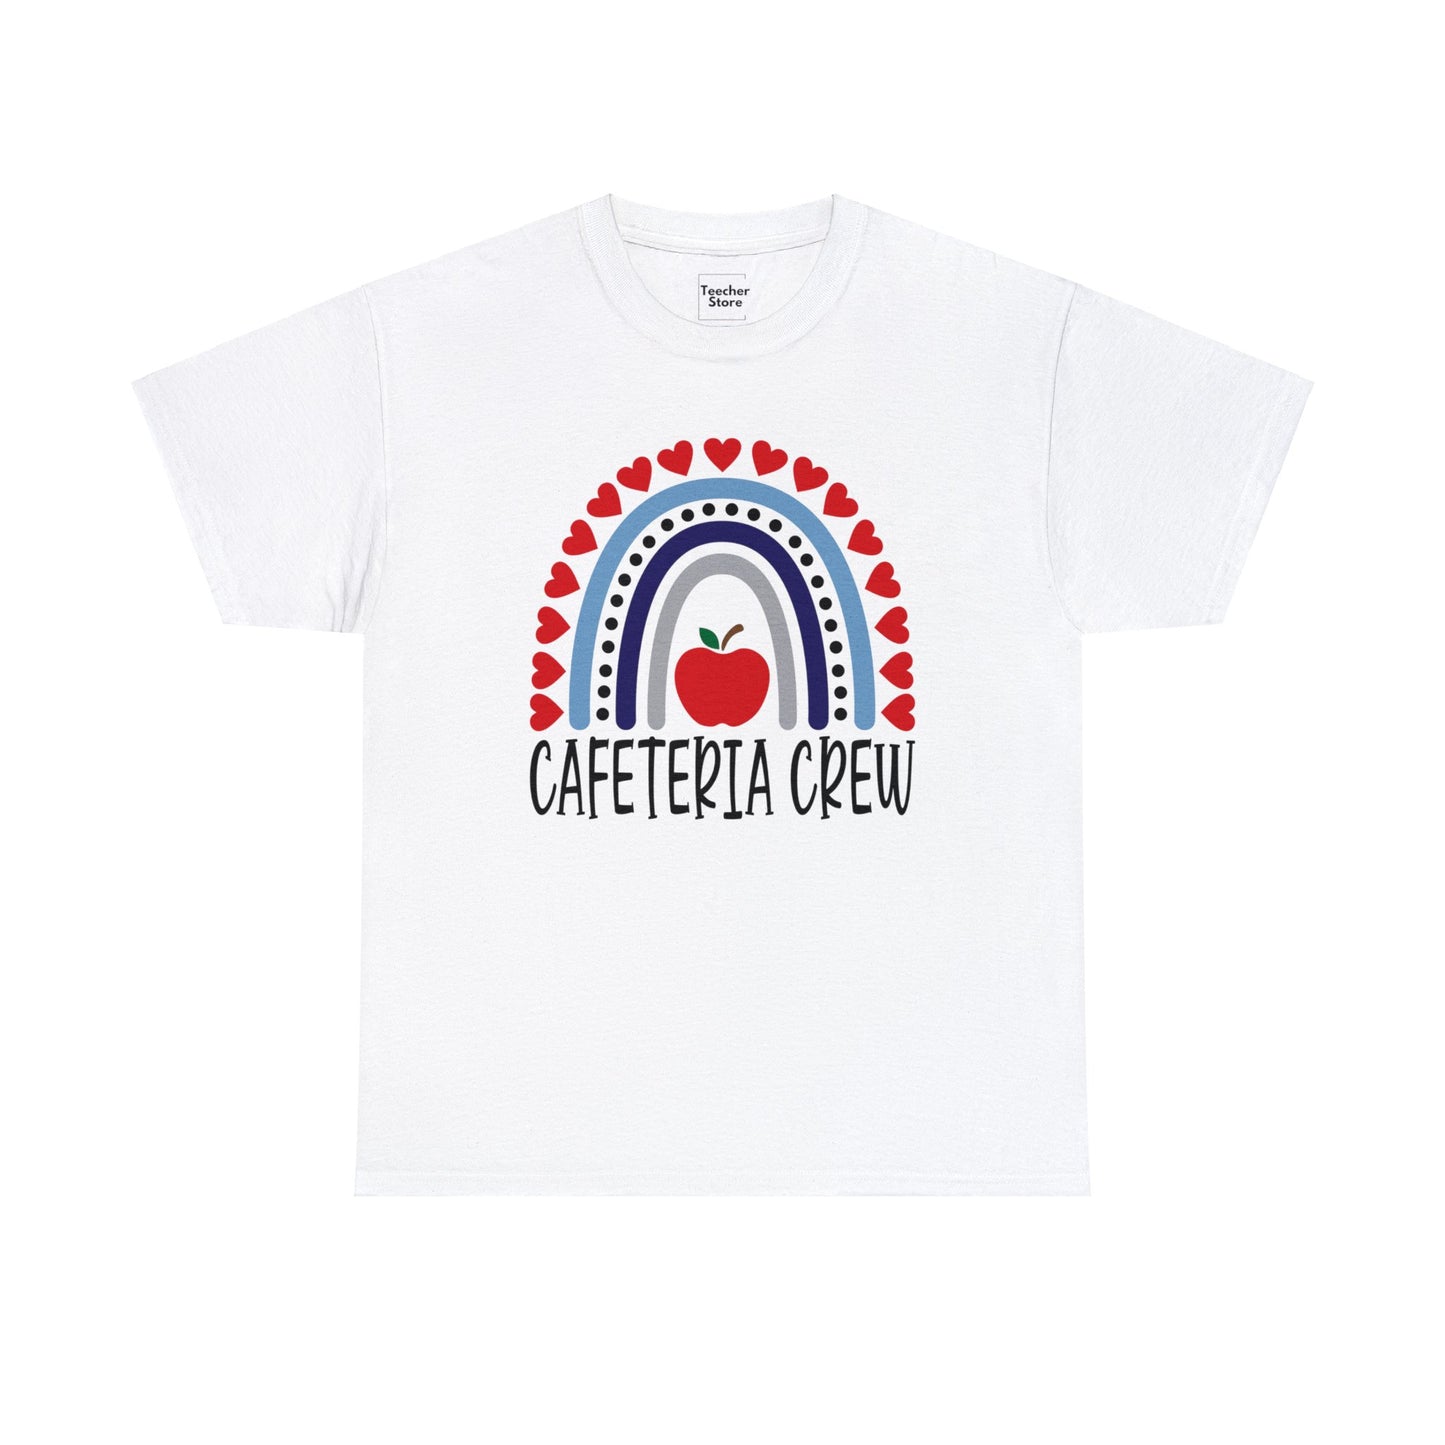 Cafeteria Crew Tee-Shirt